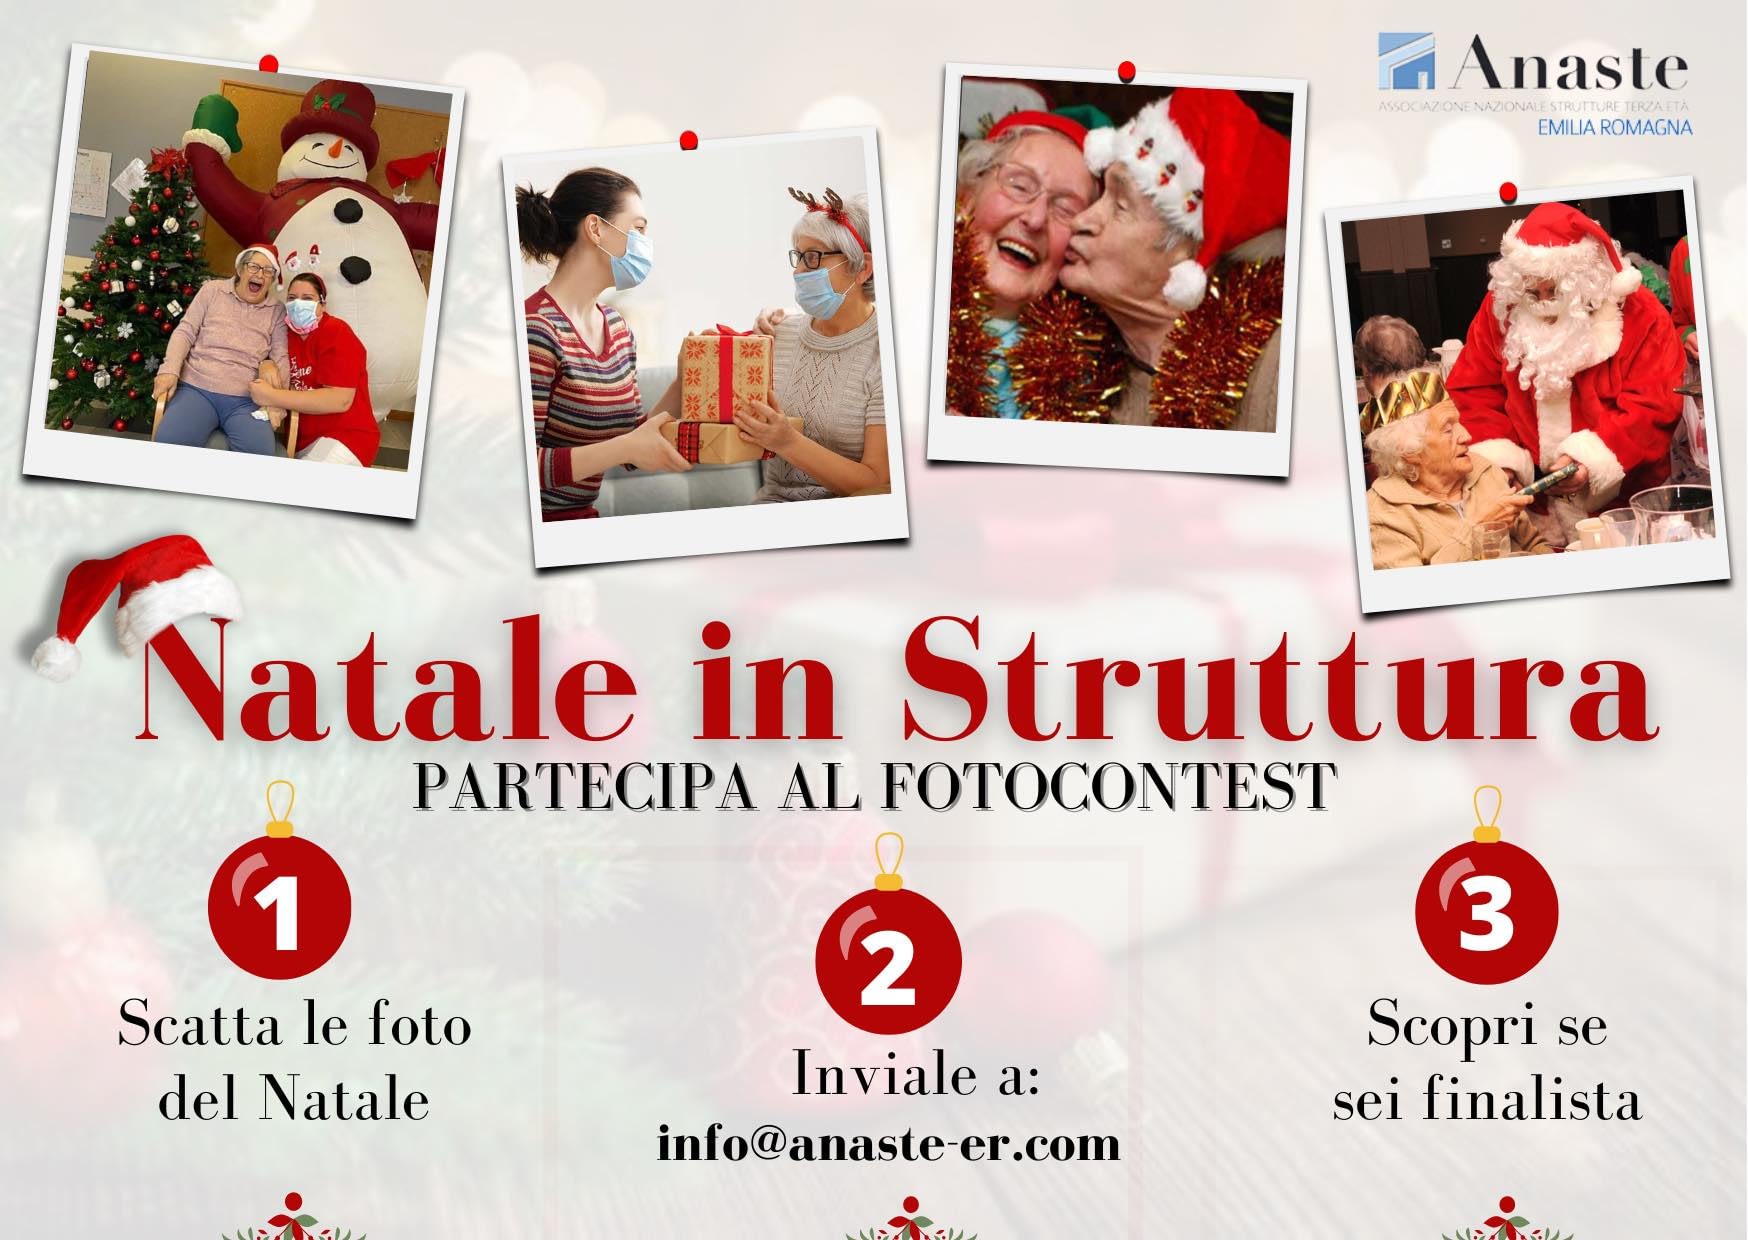 Anaste Emilia Romagna: Foto contest “Natale in struttura”